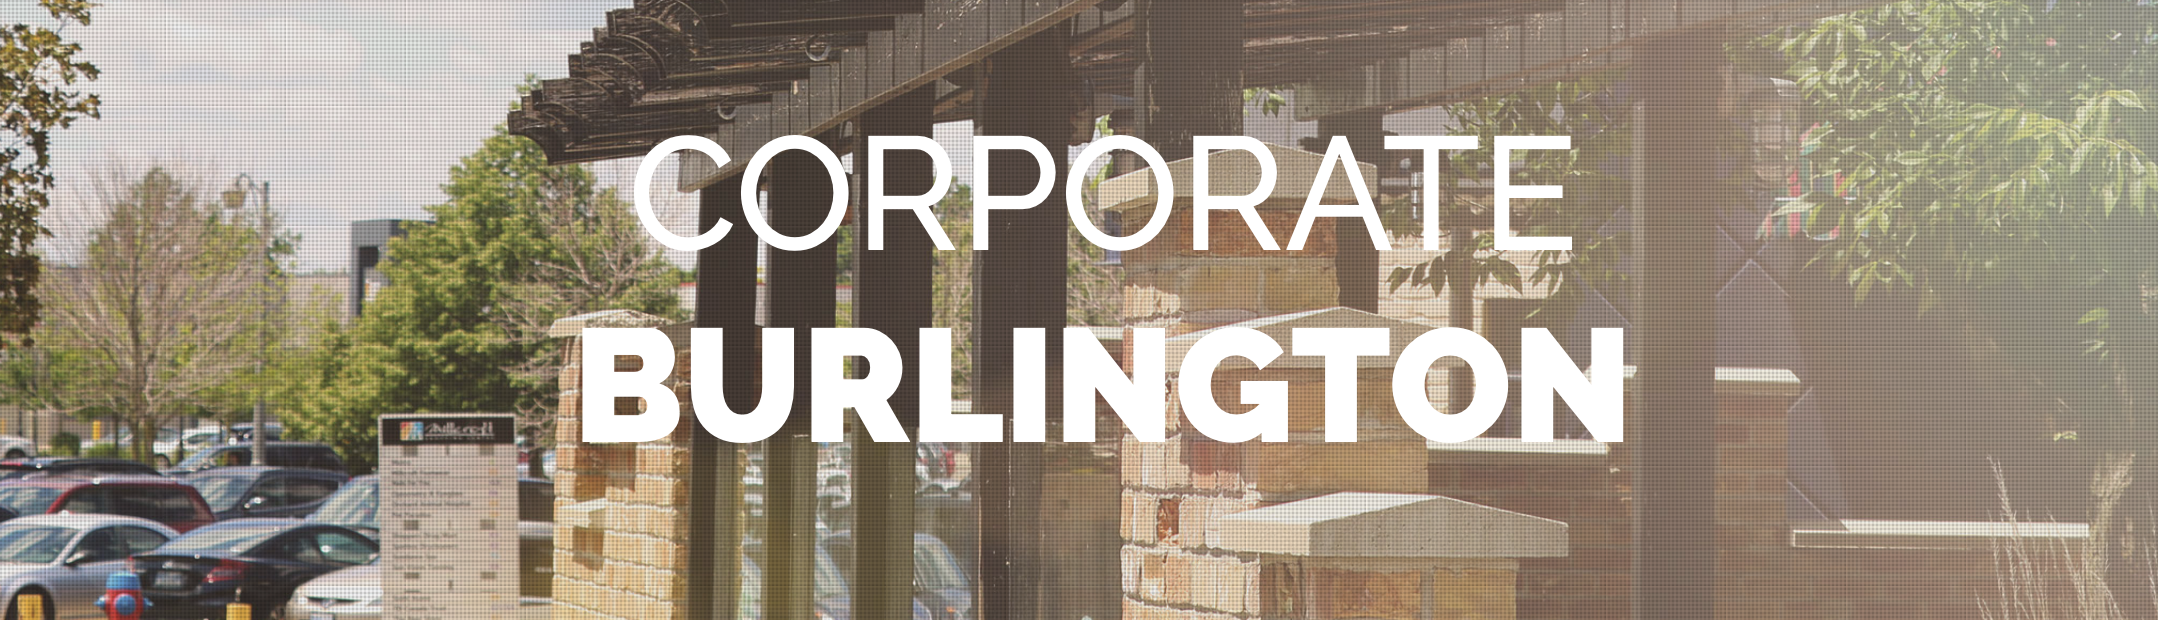 Explore Burlington - Corporate neighbourhood with The Mink Group real estate.